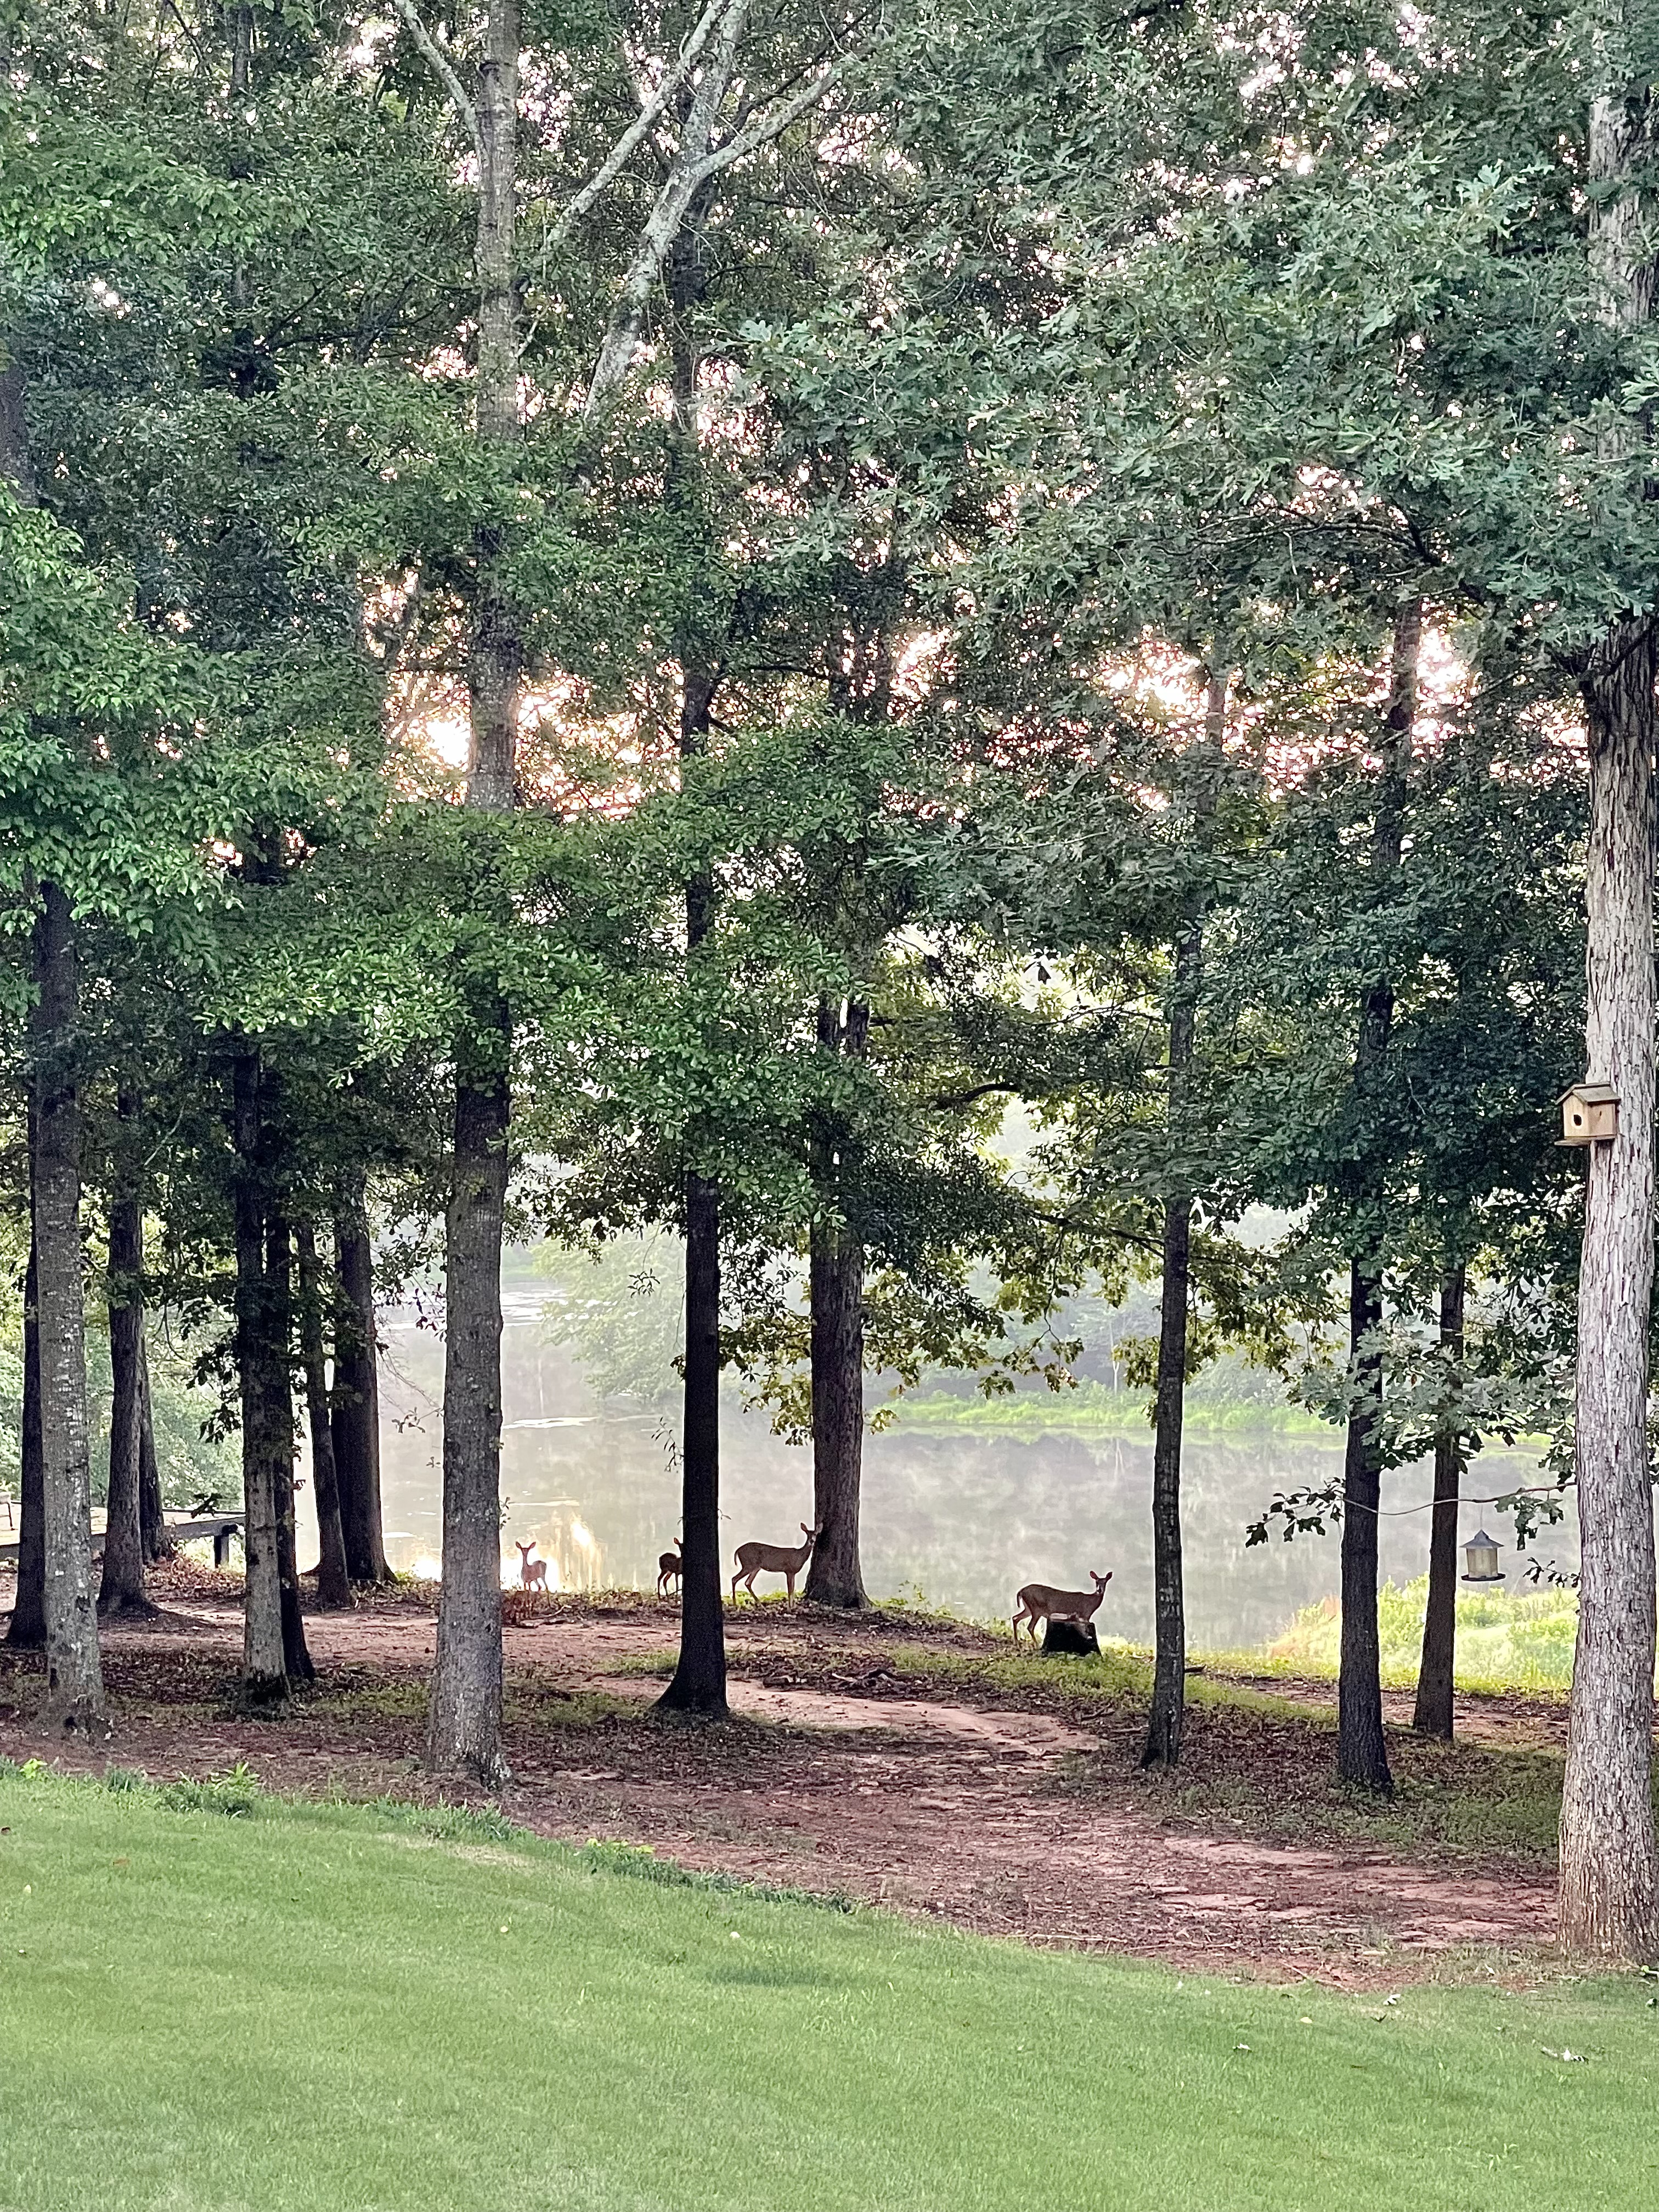 deer family at duke manor farm